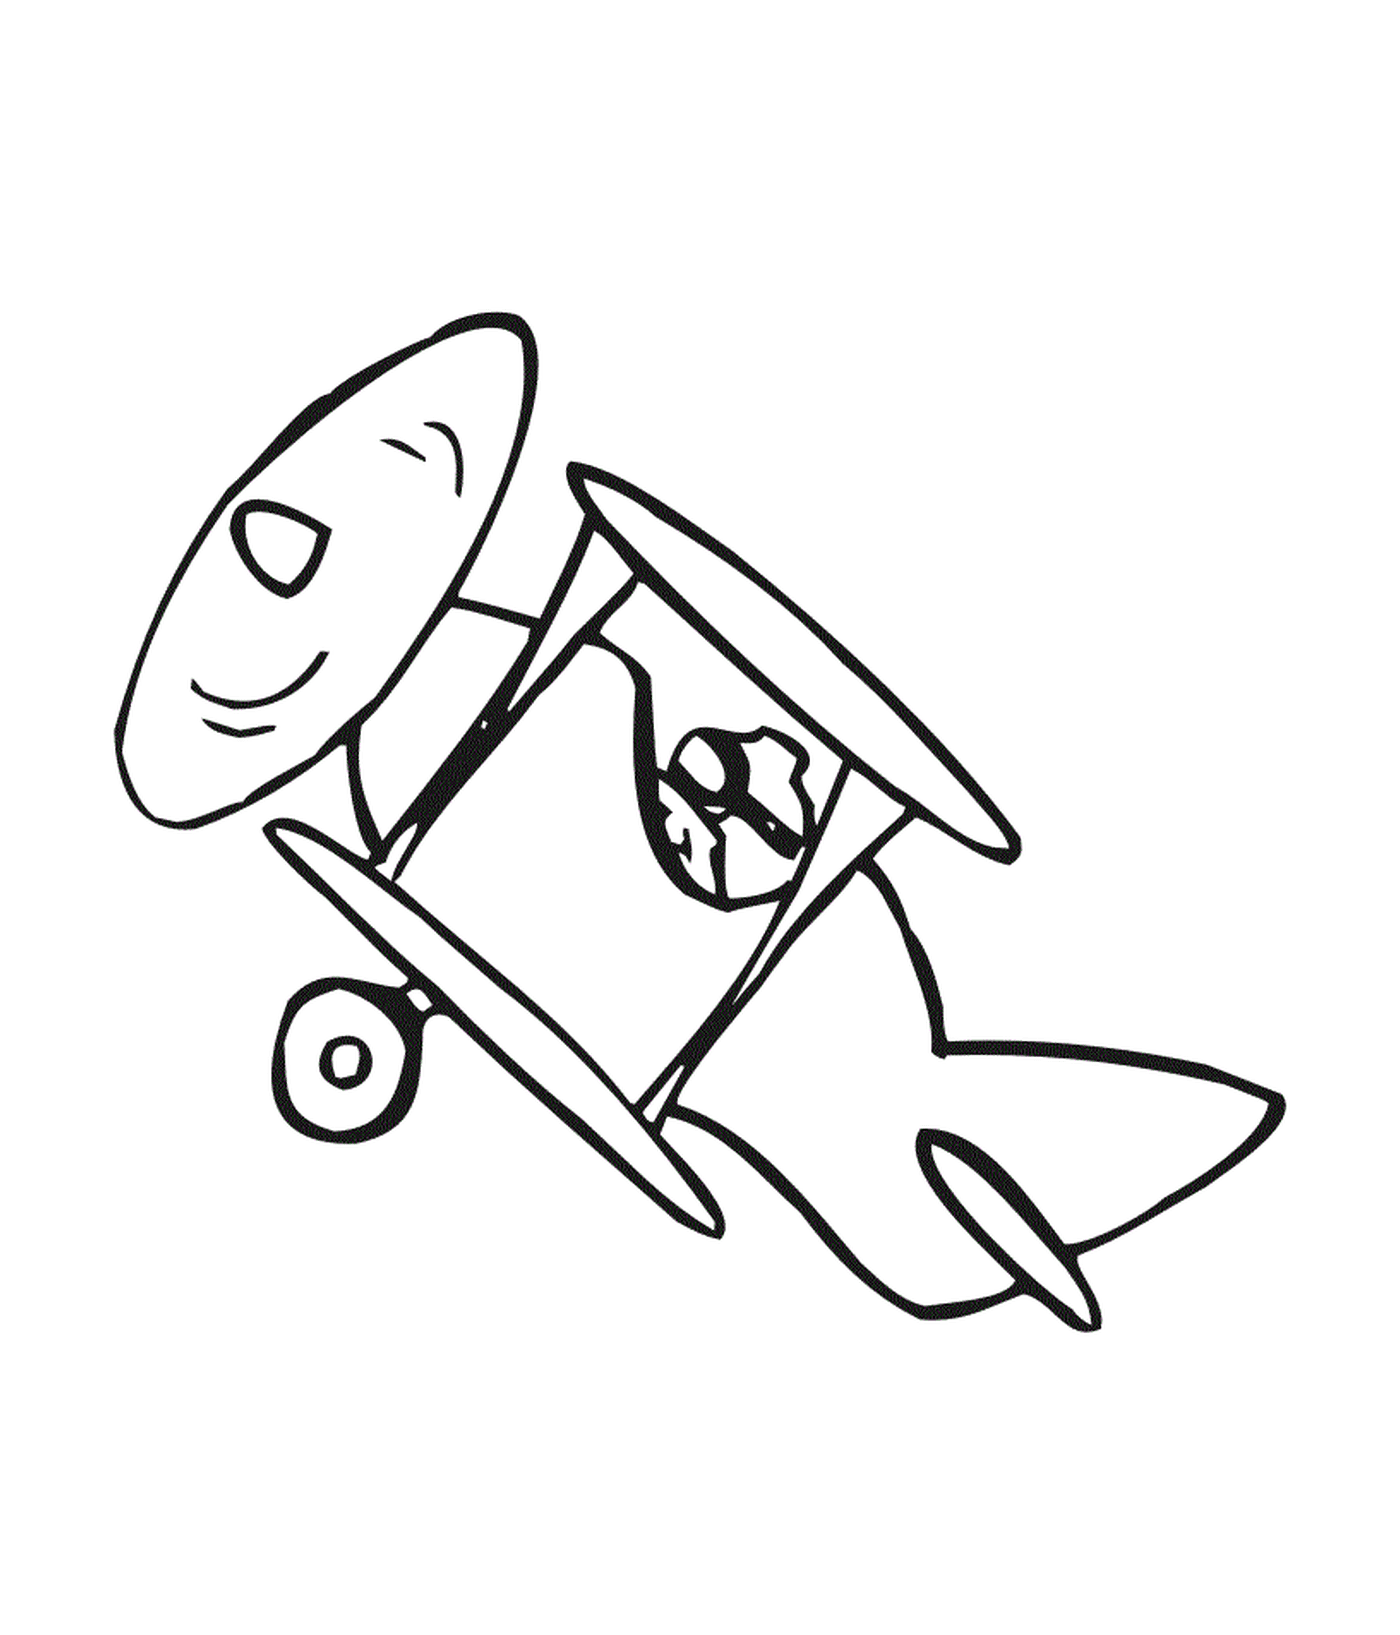  A toy warplane 